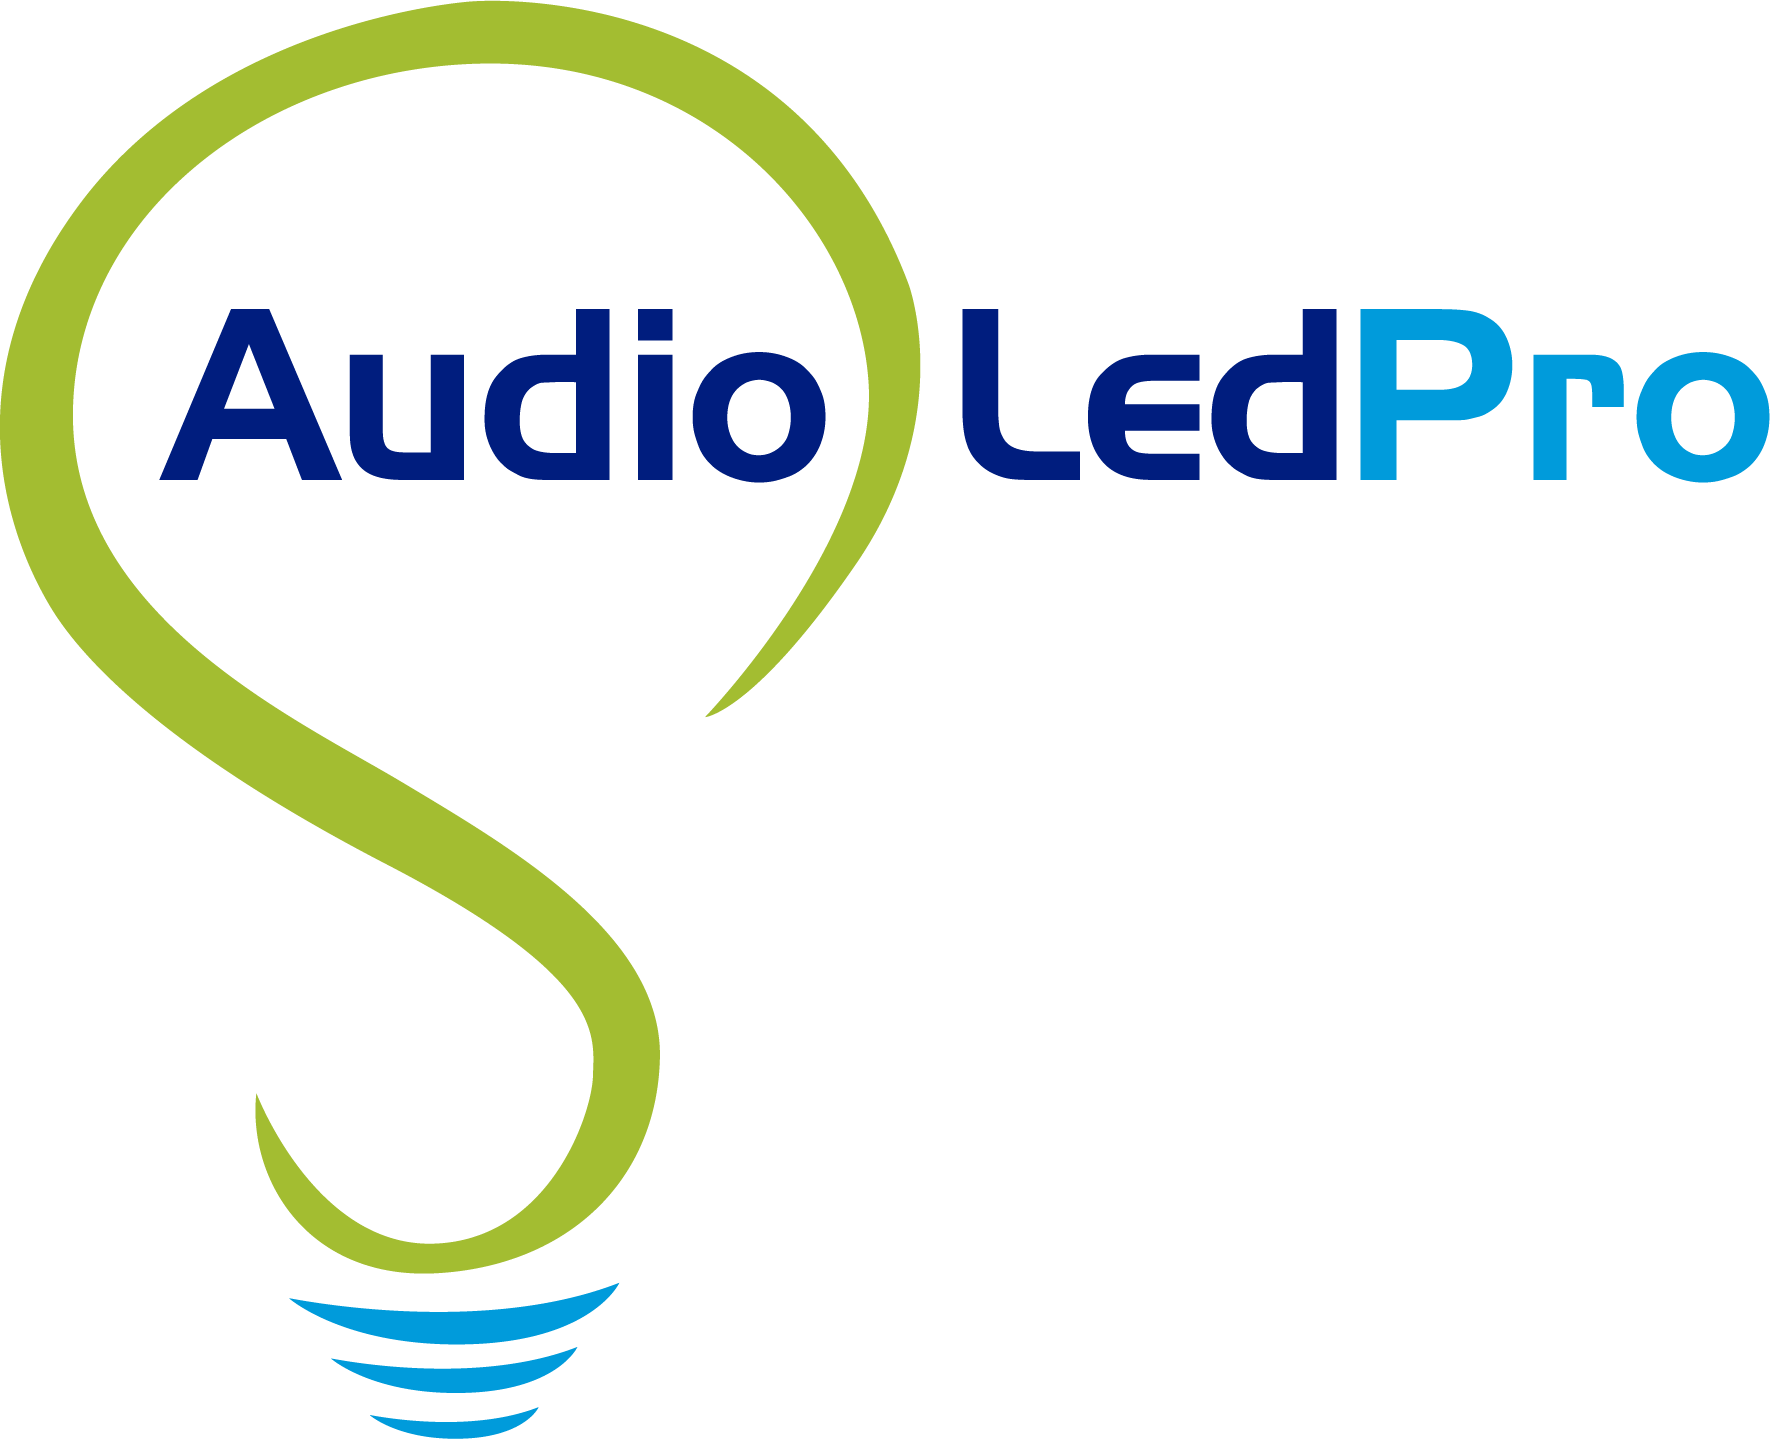 Audio led Pro